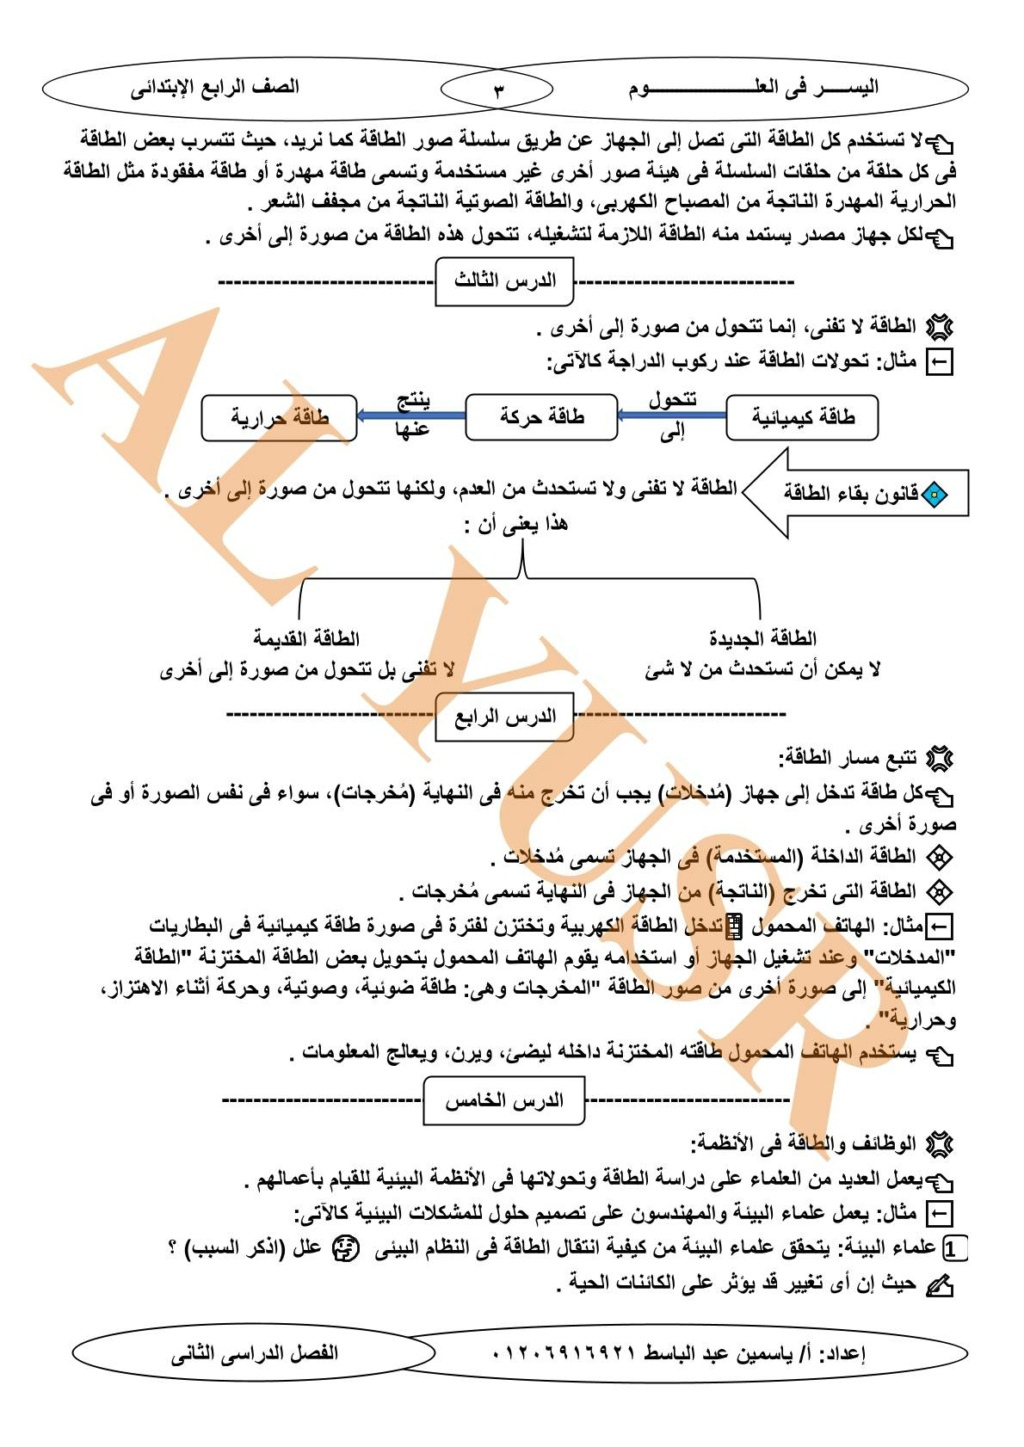 مراجعة الأجهزة والطاقة علوم رابعة ابتدائي ترم ثاني أ. ياسمين عبد الباسط  3440